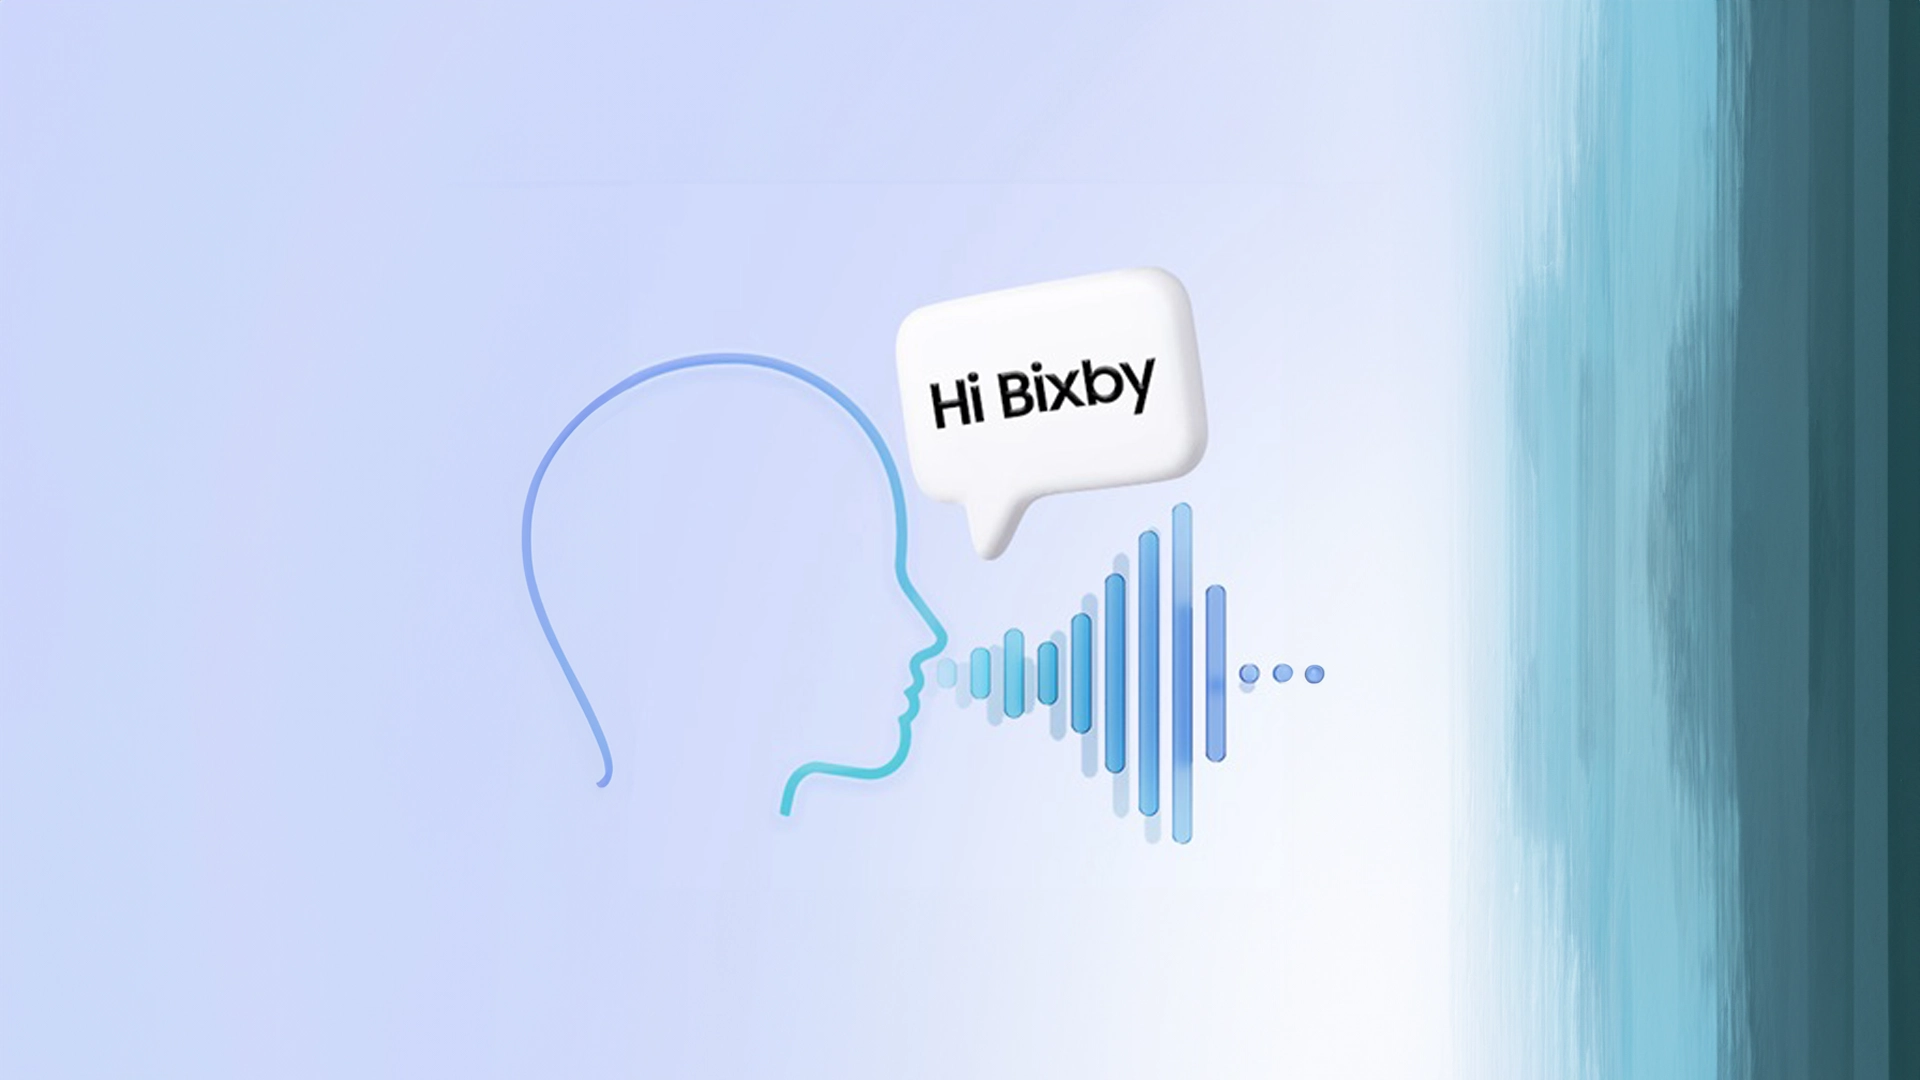 Ciri Galaxy AI Kini Boleh Diseru Dengan Bixby Pada Peranti Samsung